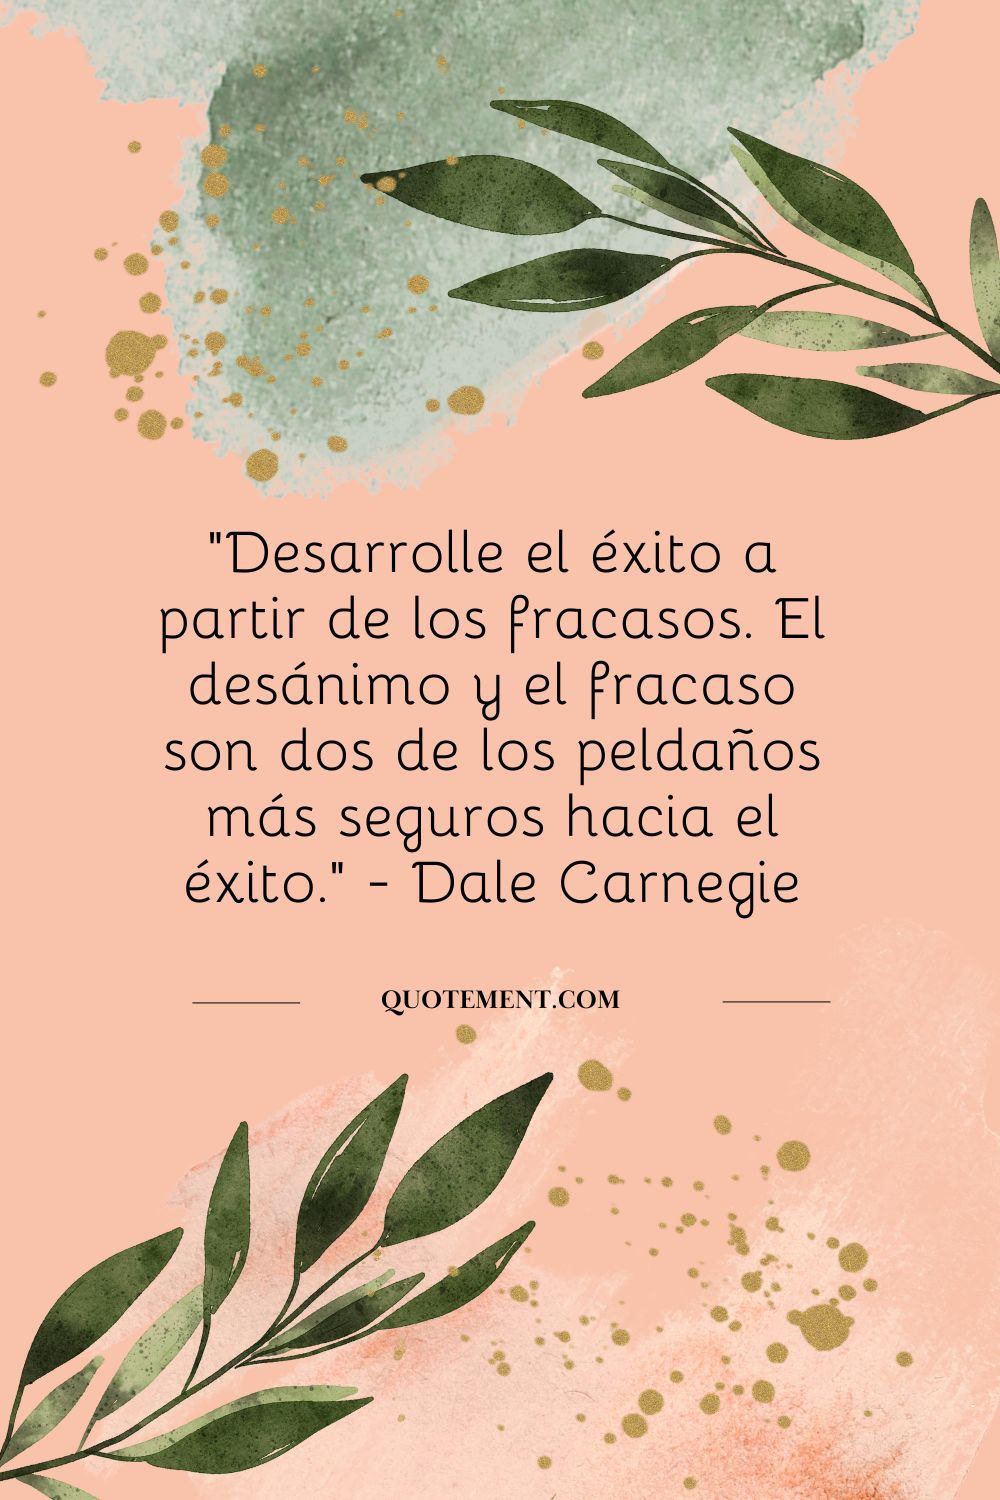 "Desarrollar el éxito a partir de los fracasos. El desánimo y el fracaso son dos de los peldaños más seguros hacia el éxito." - Dale Carnegie